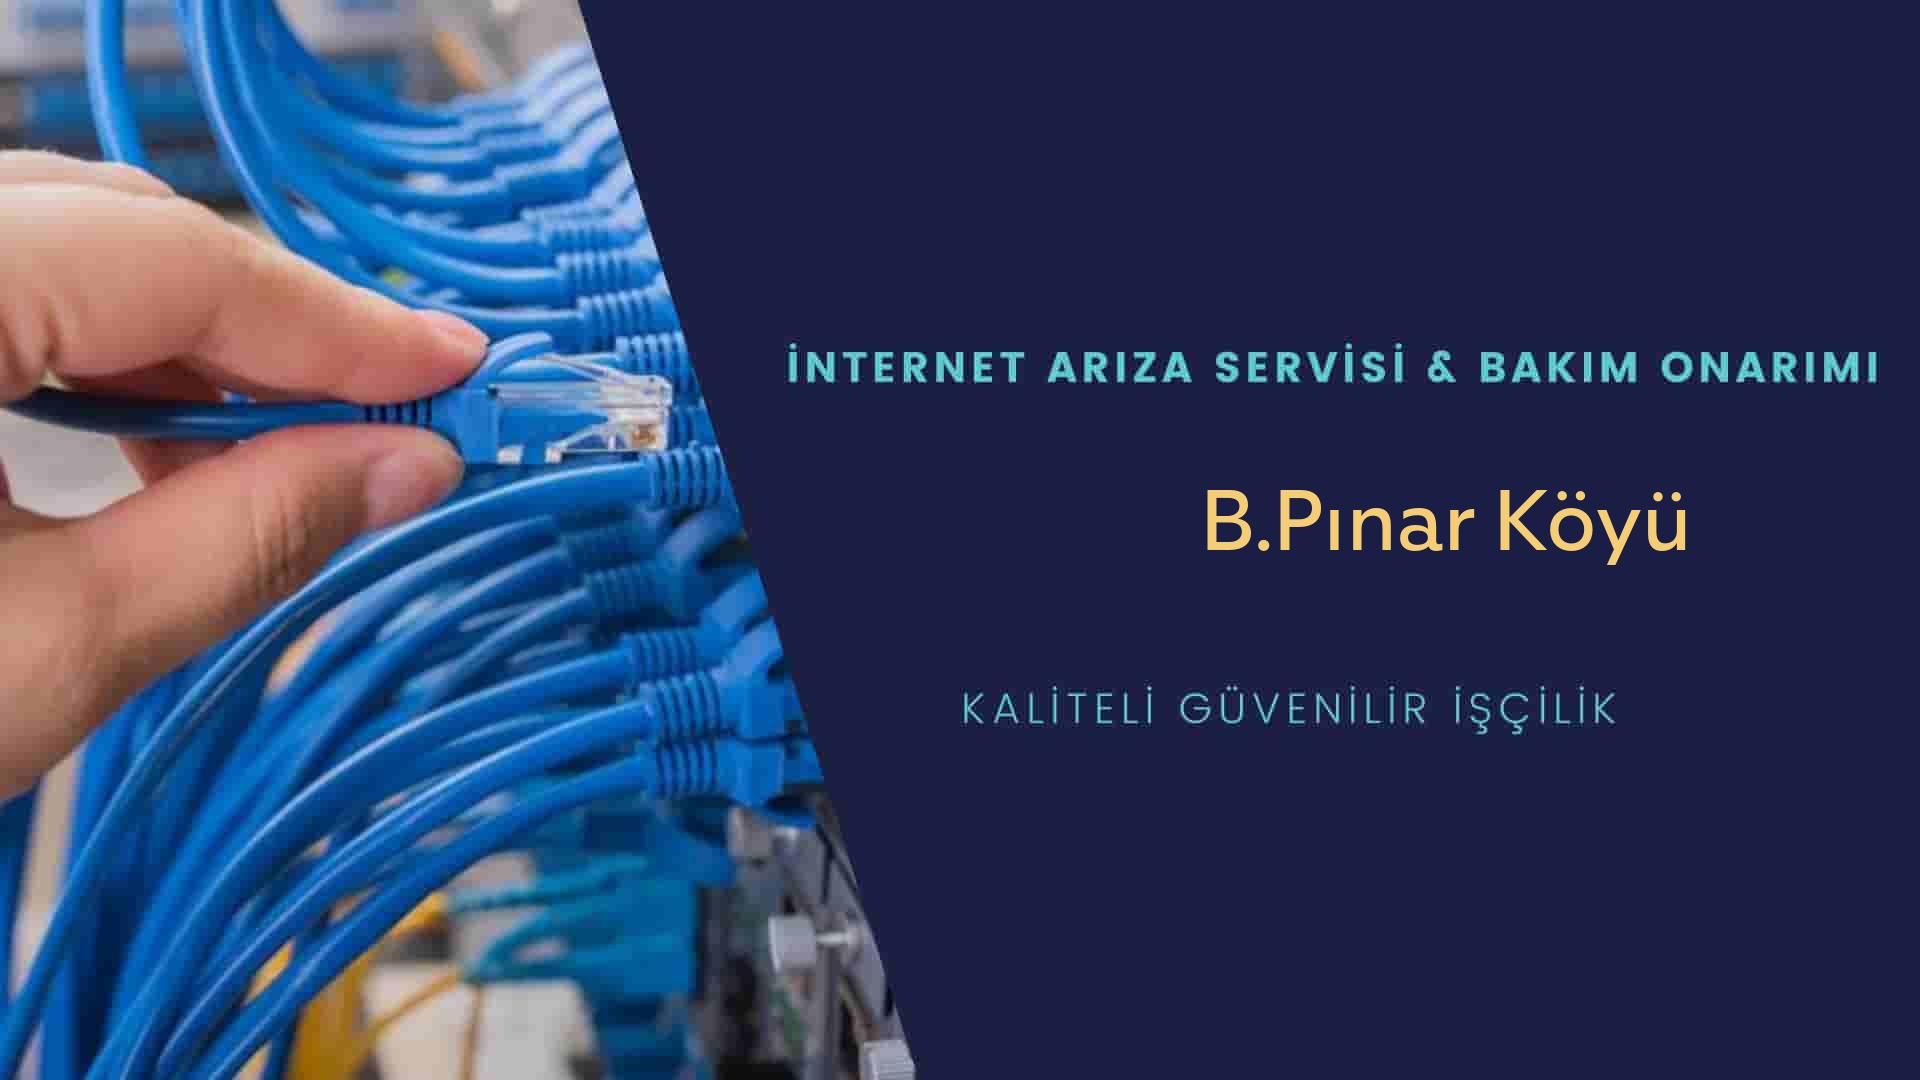 B.Pınar Köyü internet kablosu çekimi yapan yerler veya elektrikçiler mi? arıyorsunuz doğru yerdesiniz o zaman sizlere 7/24 yardımcı olacak profesyonel ustalarımız bir telefon kadar yakındır size.